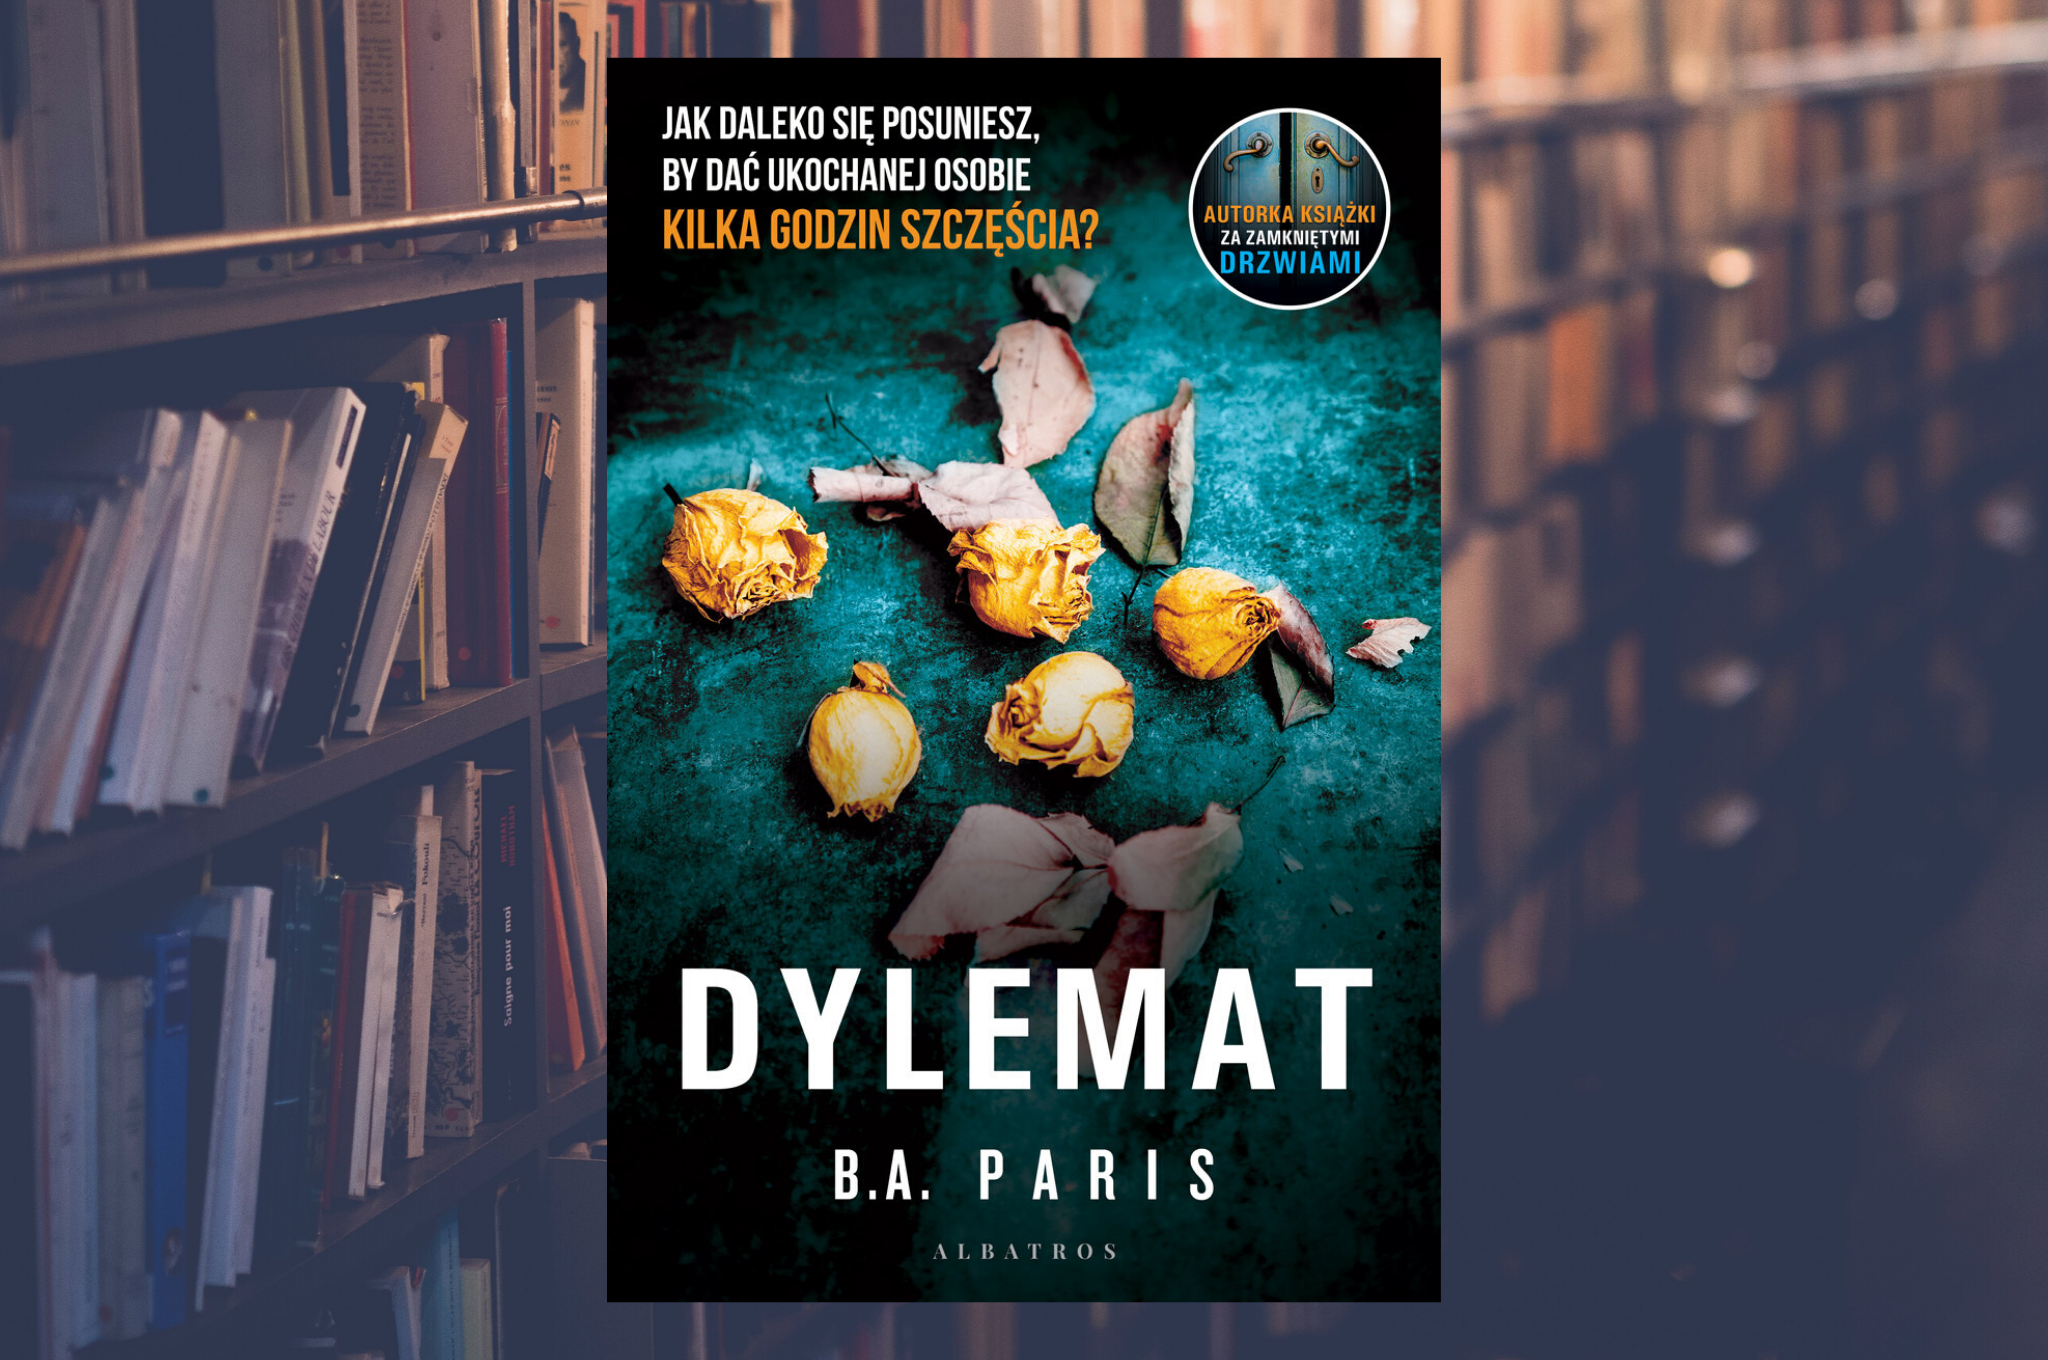 B.A. PARIS "DYLEMAT"